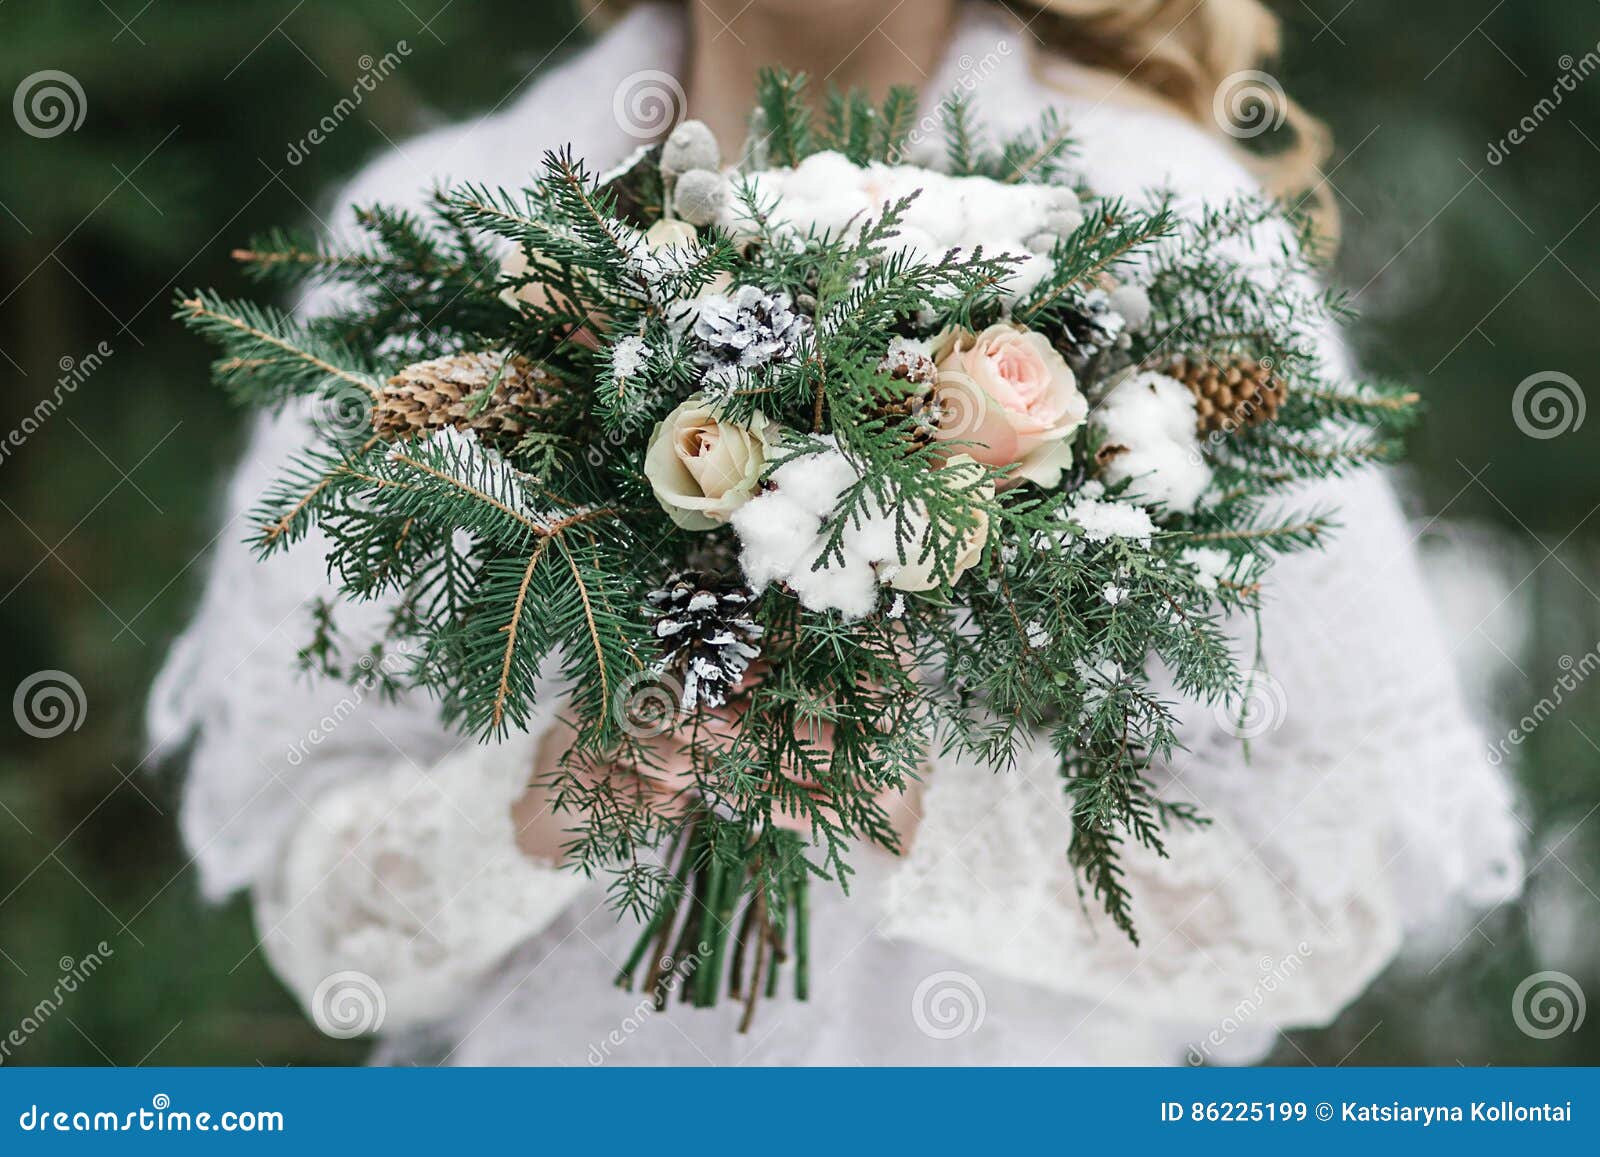 Bouquet de mariage d'hiver image stock. Image du enclenchement - 86225199